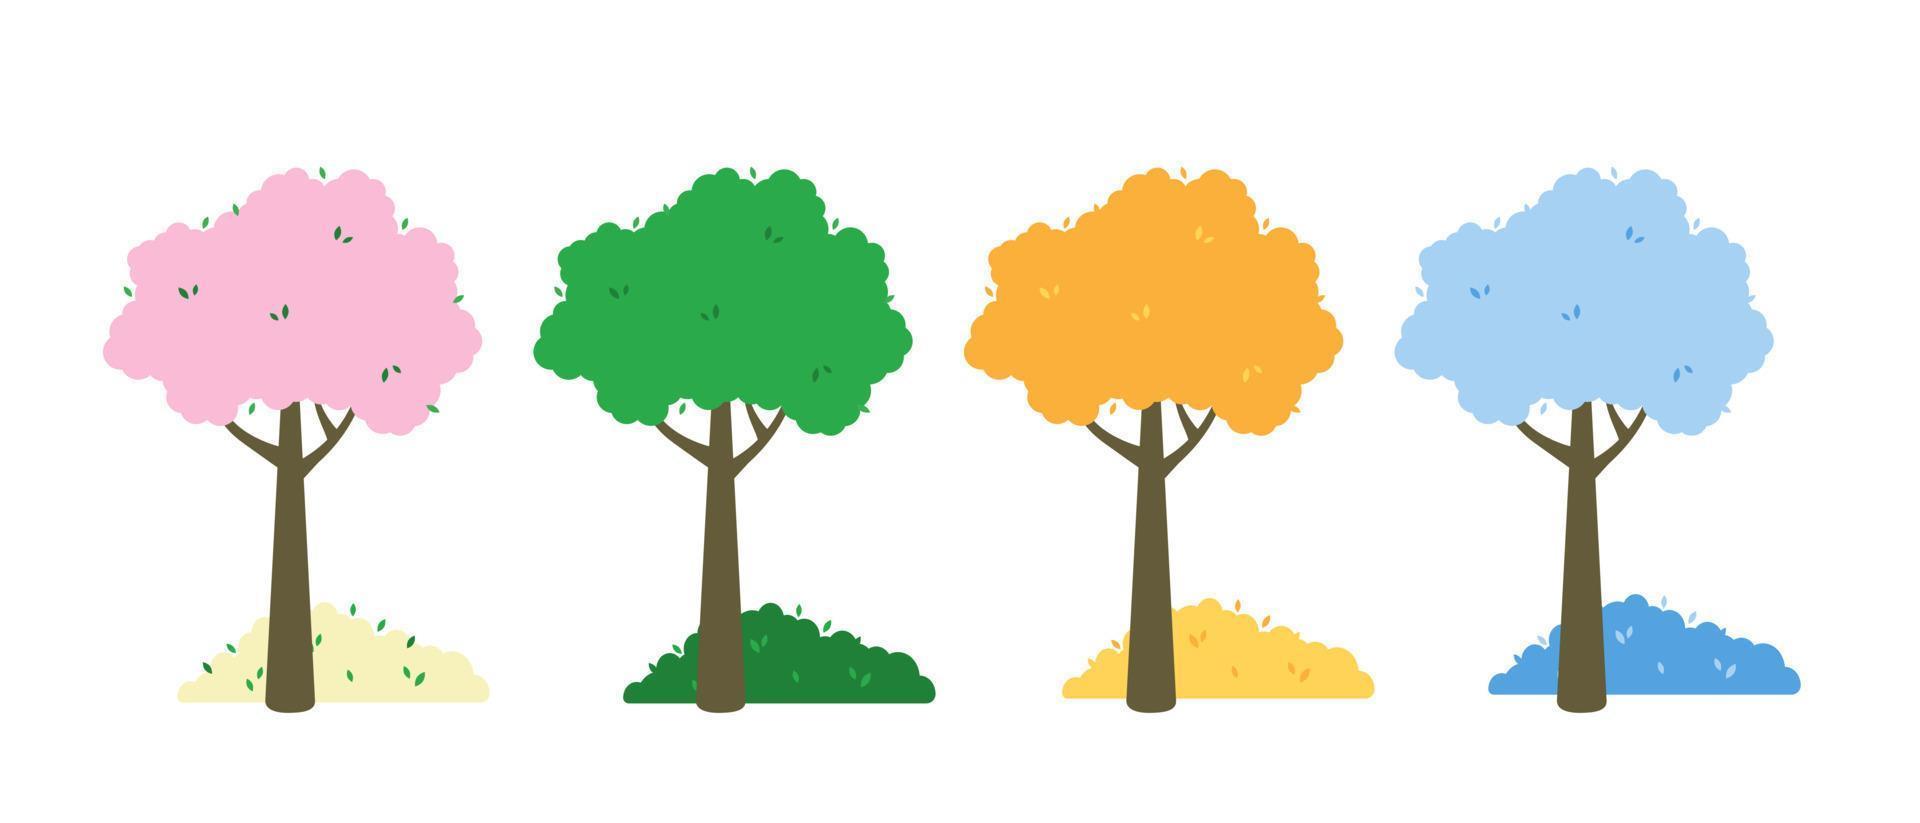 árvore de quatro estações de cores diferentes primavera, verão, outono, inverno. vetor